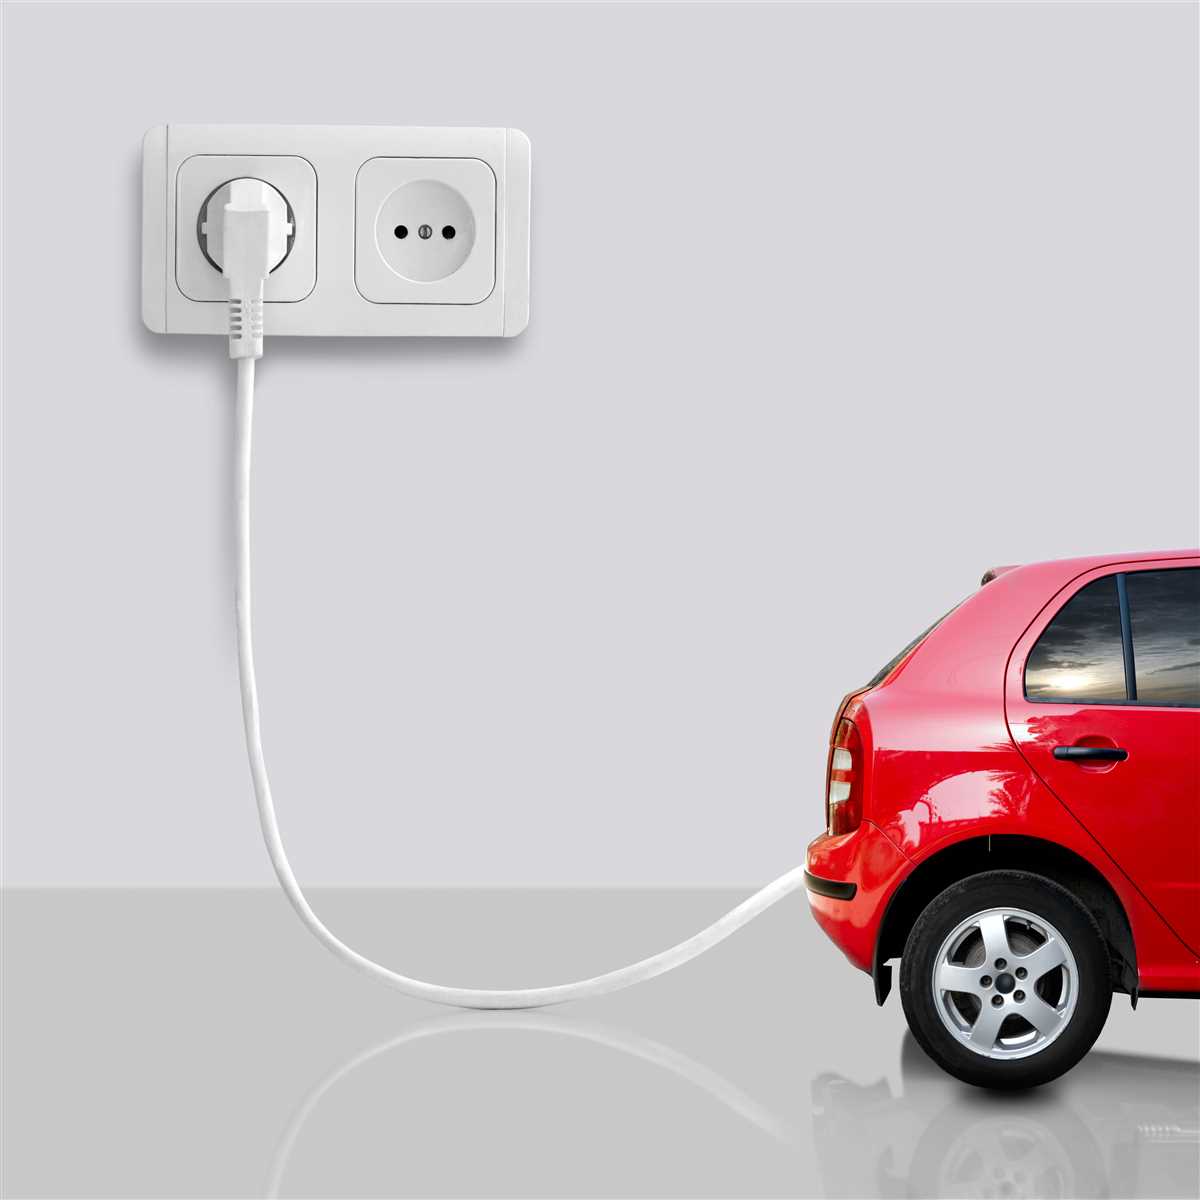 Auto elettriche: risparmio sui consumi e sullâ€™assicurazione